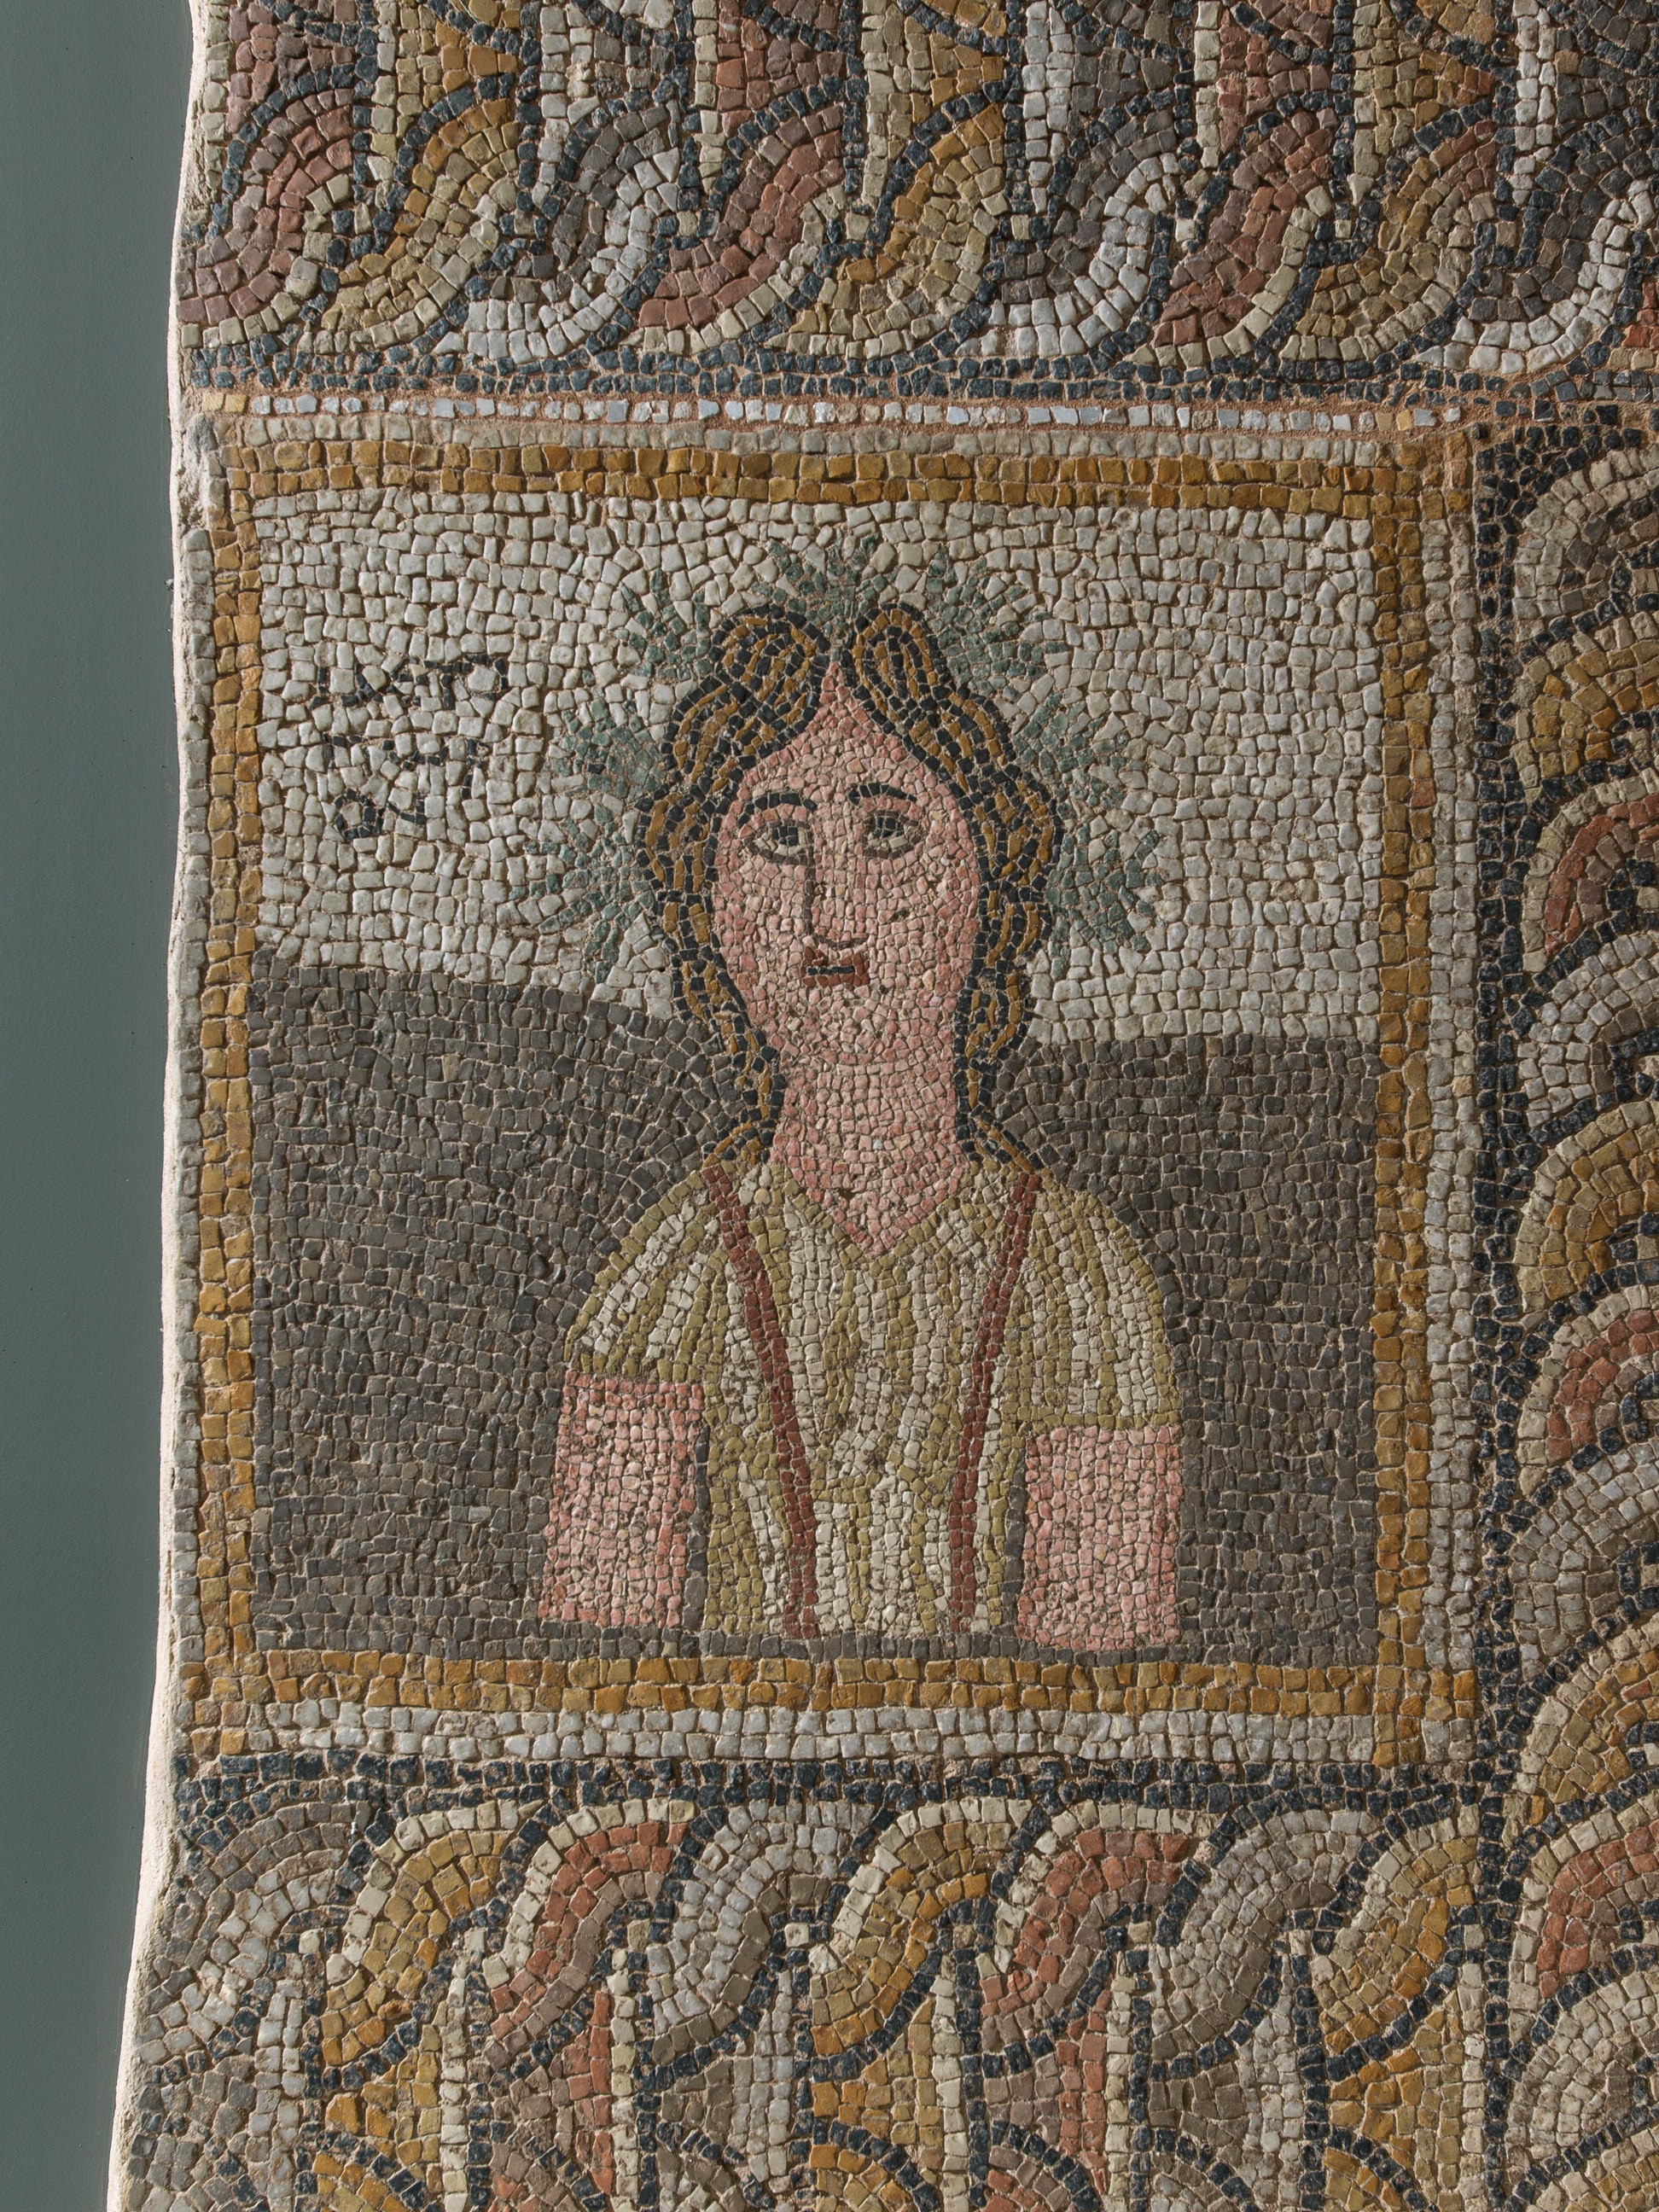 Ξενάγηση στα Βυζαντινά Ψηφιδωτά του Διαχρονικού Μουσείου Λάρισας